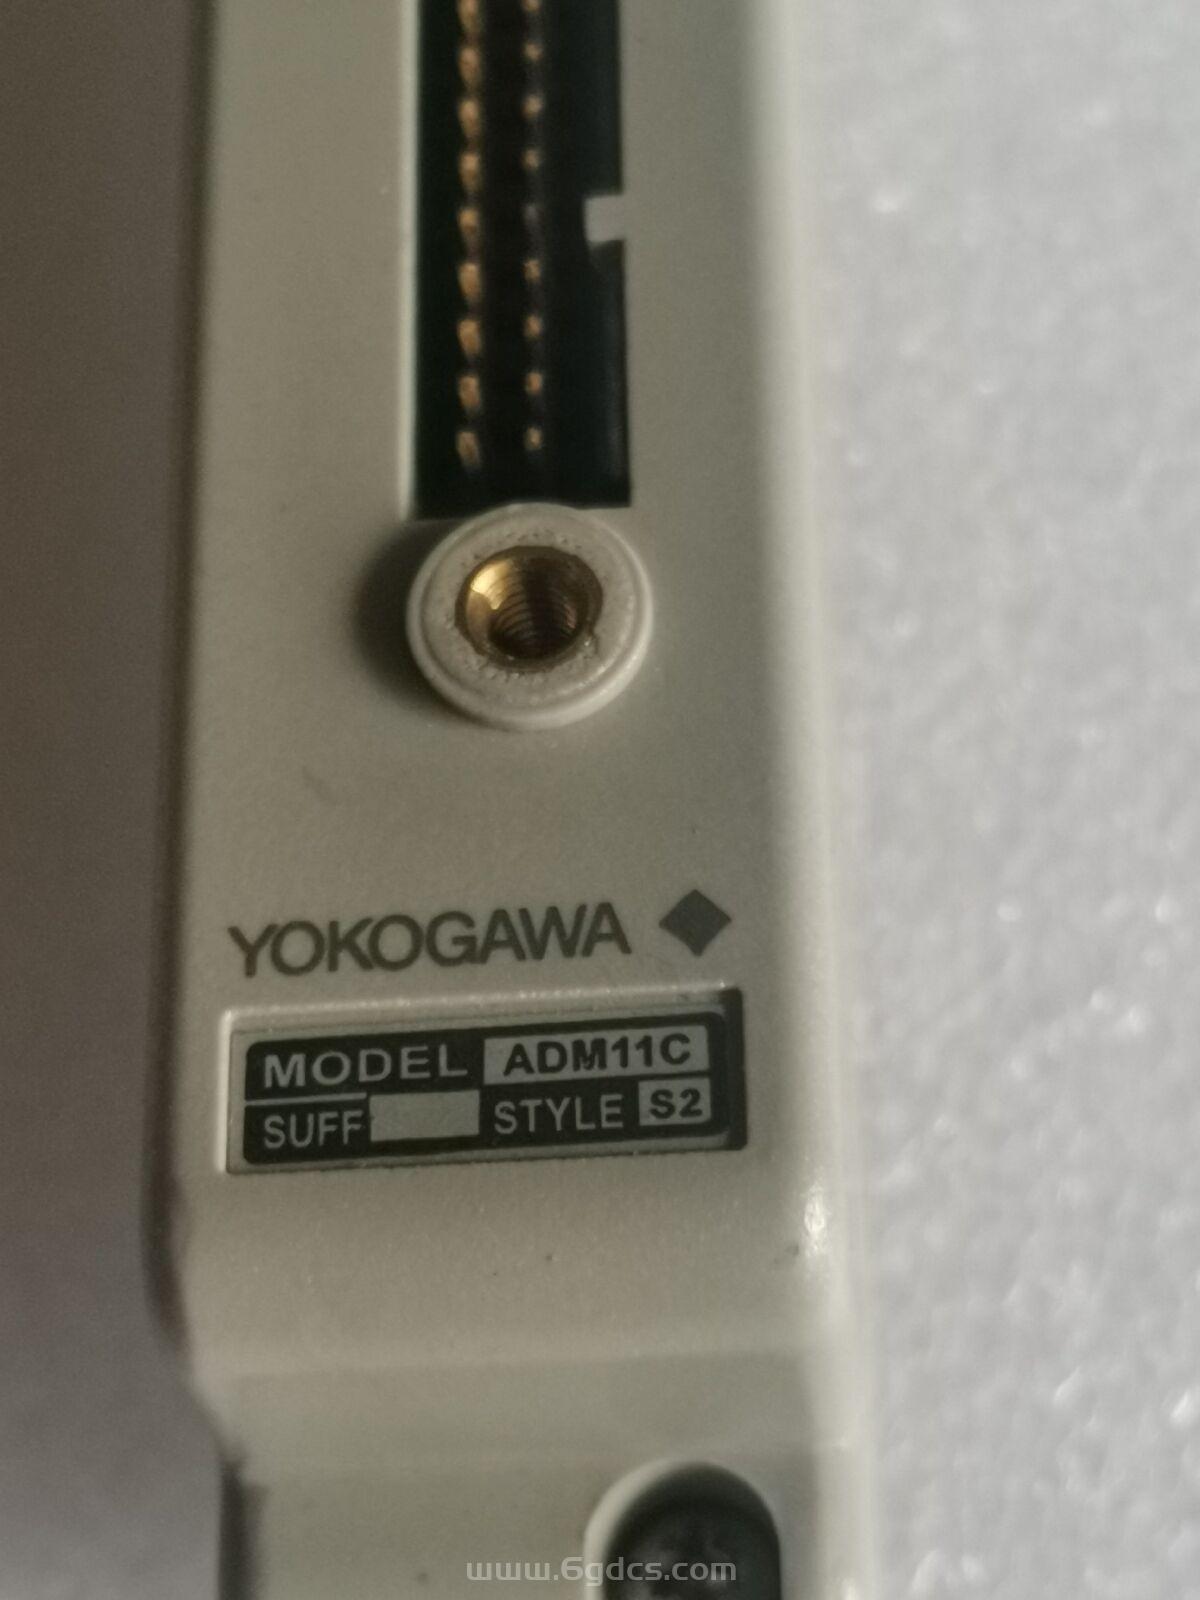 (ADM11C 接触式输入模块)原装现货YOKOGAWA 横河的模块 日本进口 全新正品供应